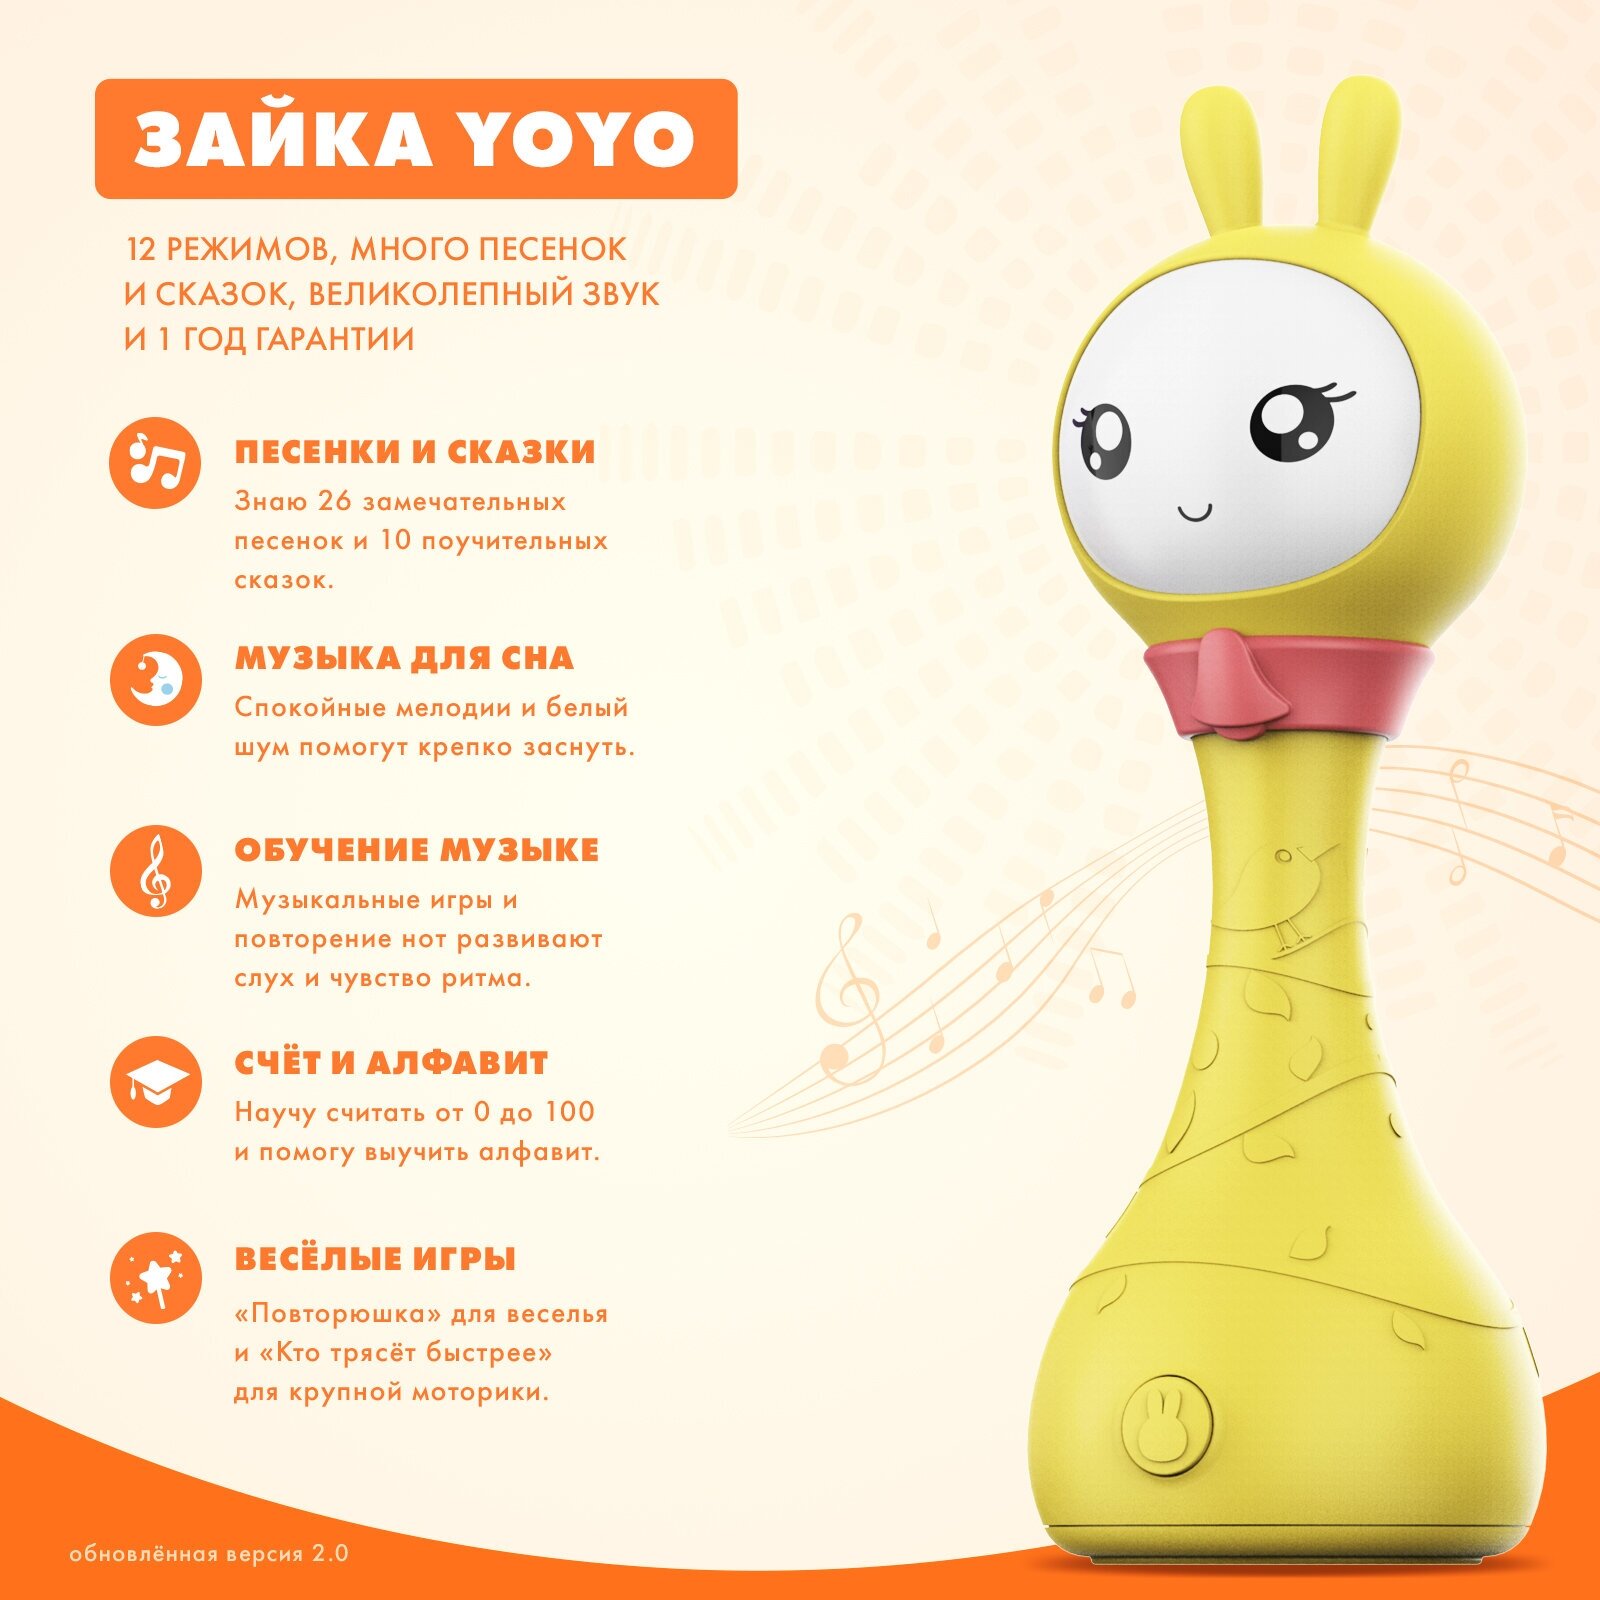 Интерактивная обучающая музыкальная игрушка Умный Зайка® alilo R1+ Yoyo. Для мальчиков, девочек